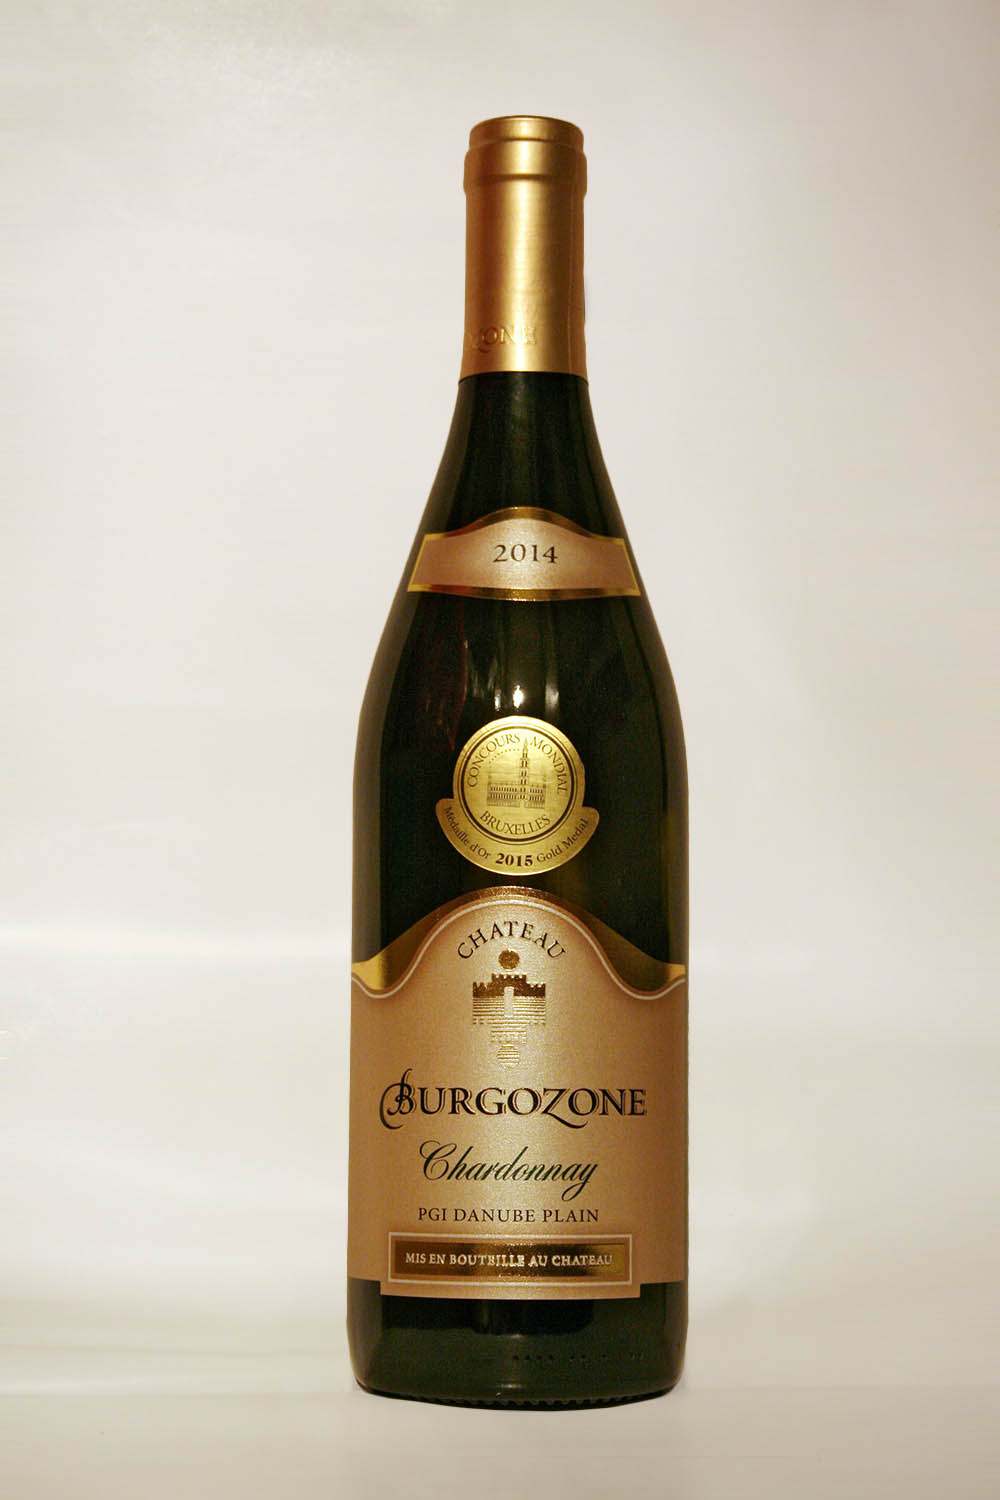 Chateau Burgozone Chardonnay 2014